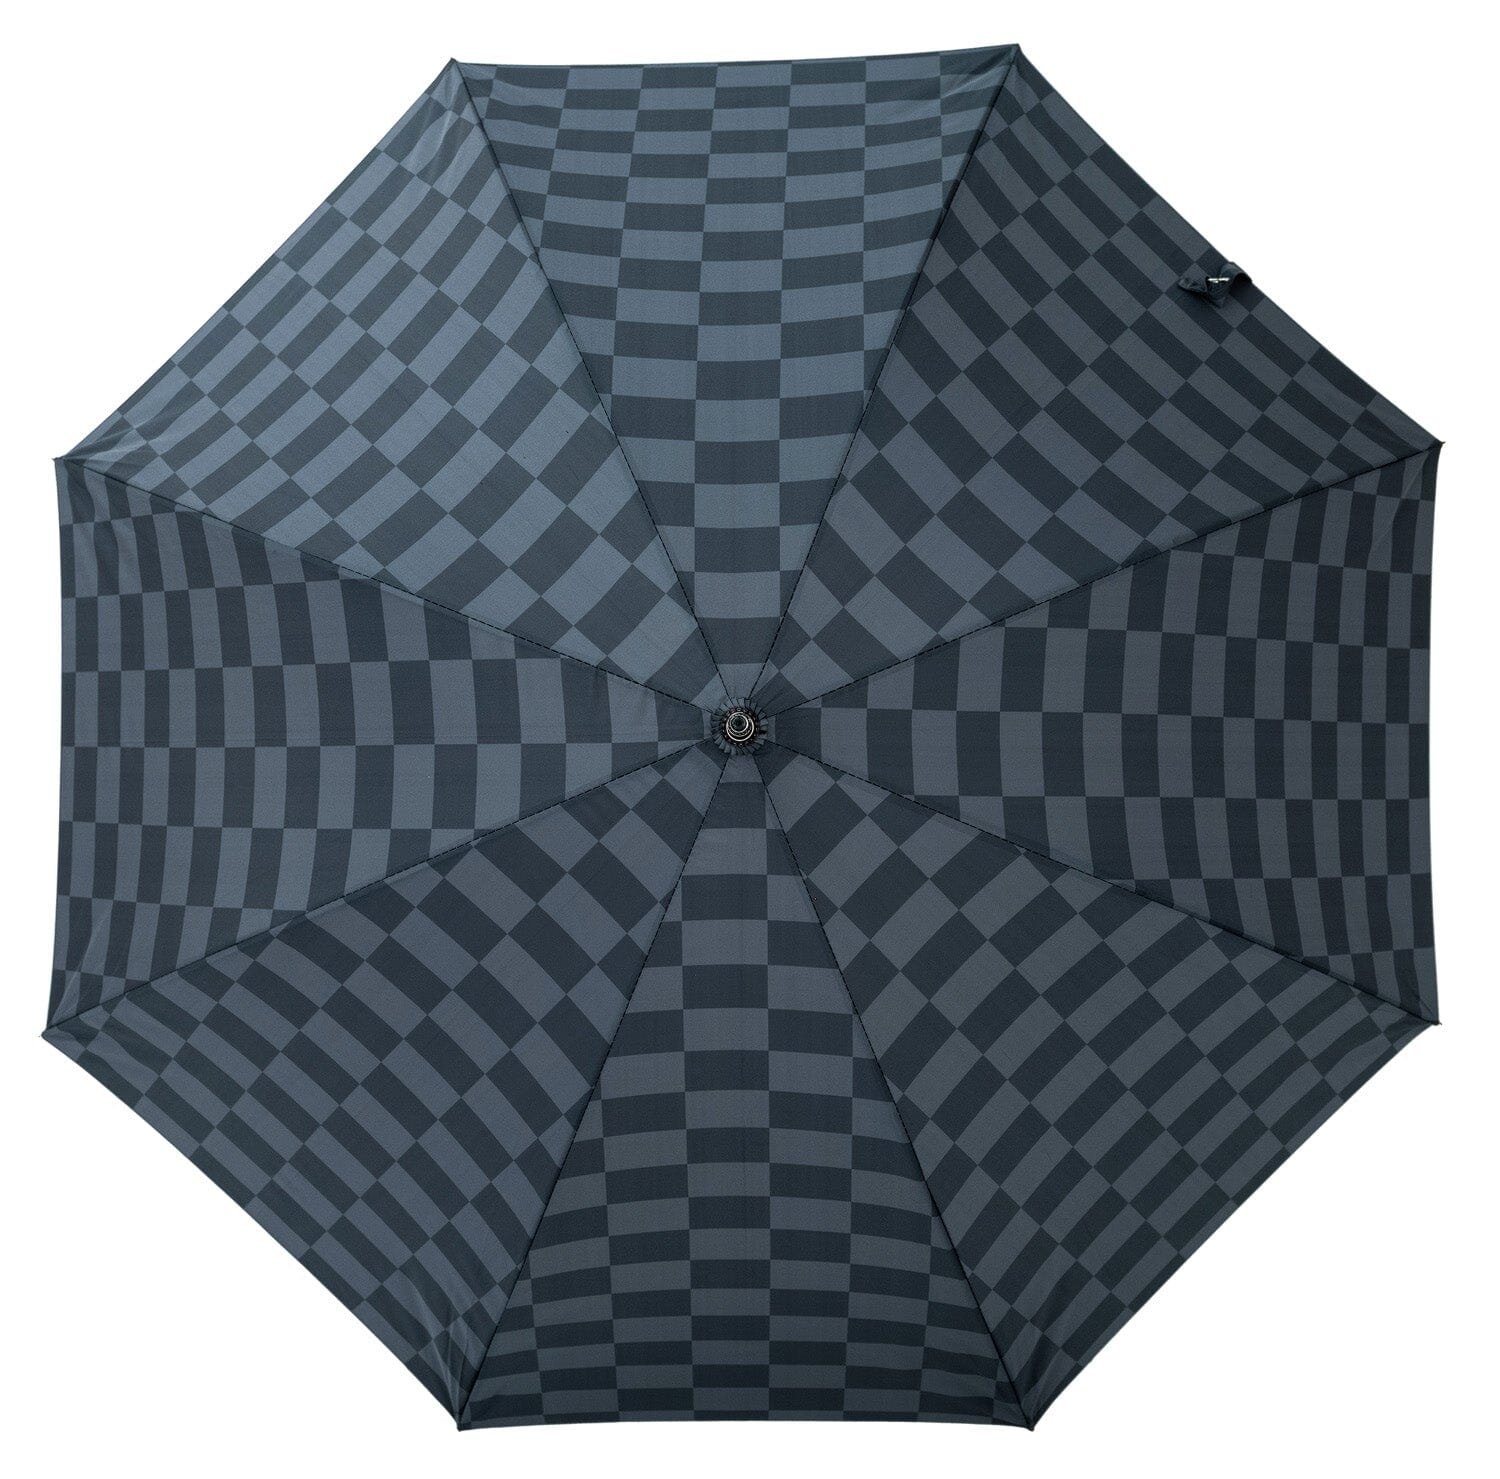 The Rain Umbrella - Vintage Green Check Rain Umbrella Business & Pleasure Co 